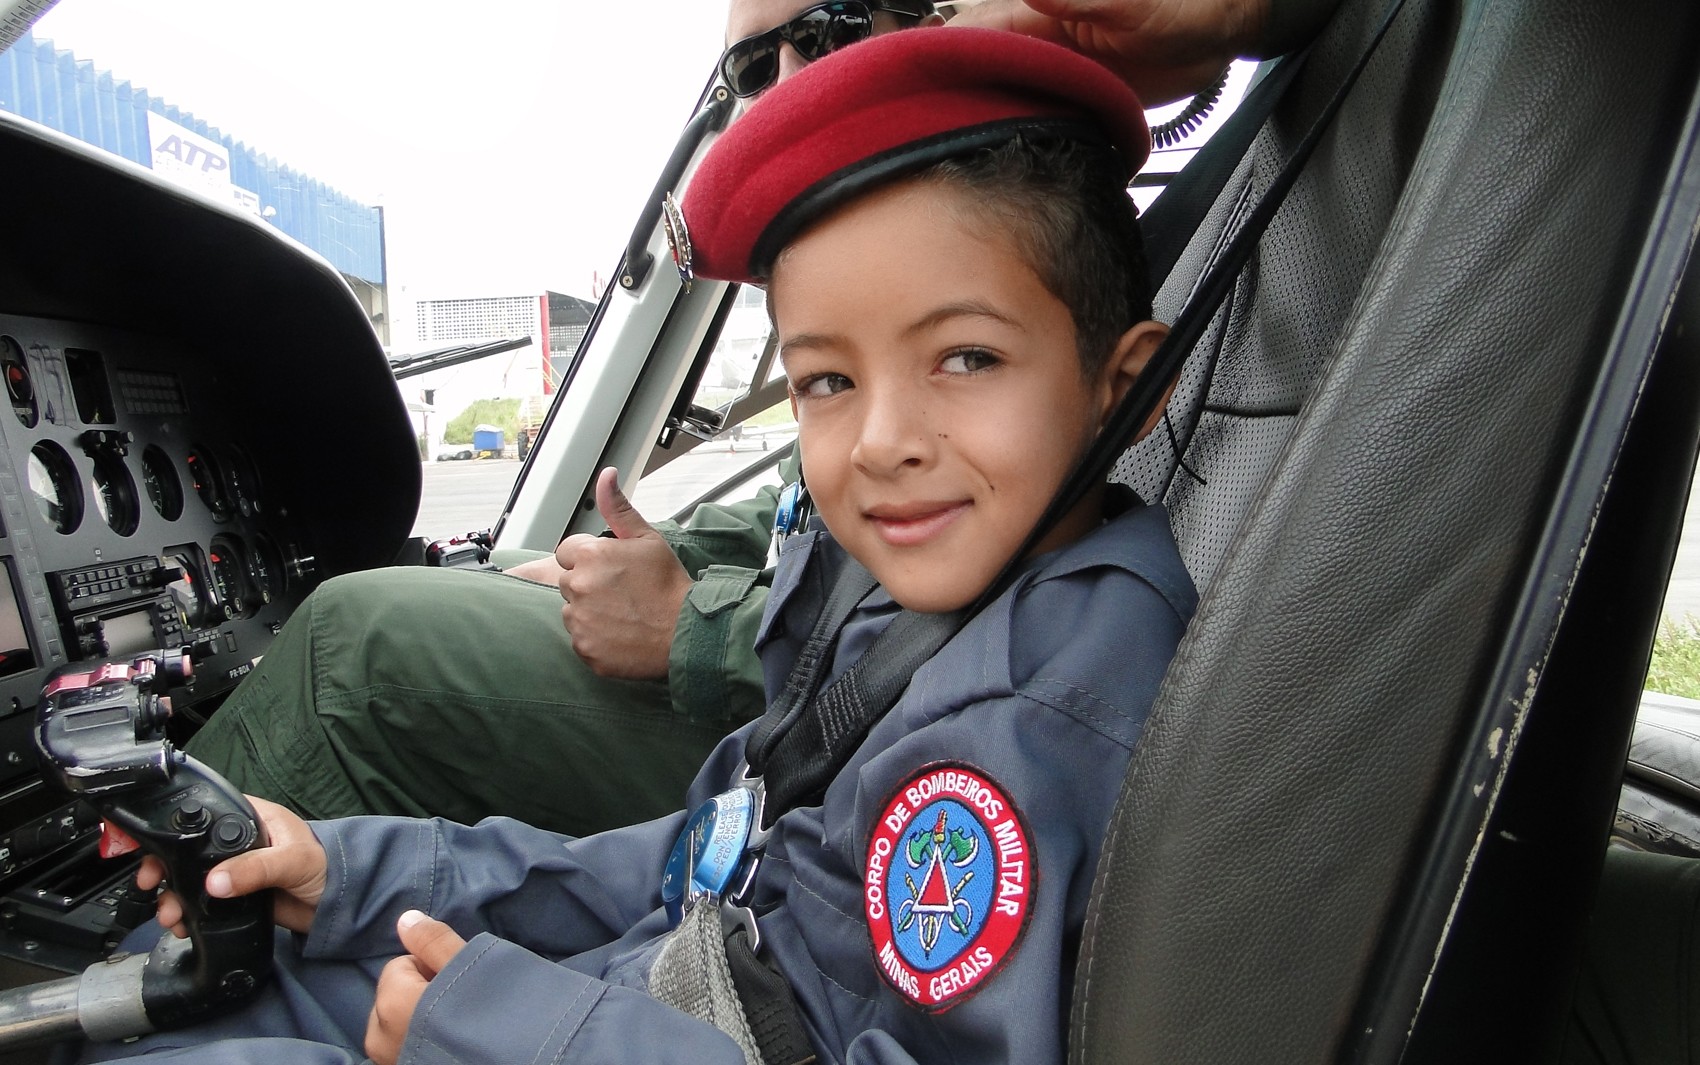 Peterson Constancia Alves, de 7 anos, sonha em ser bombeiro e vive dia de 'piloto' em MG (Foto: Flávia Cristini/G1)